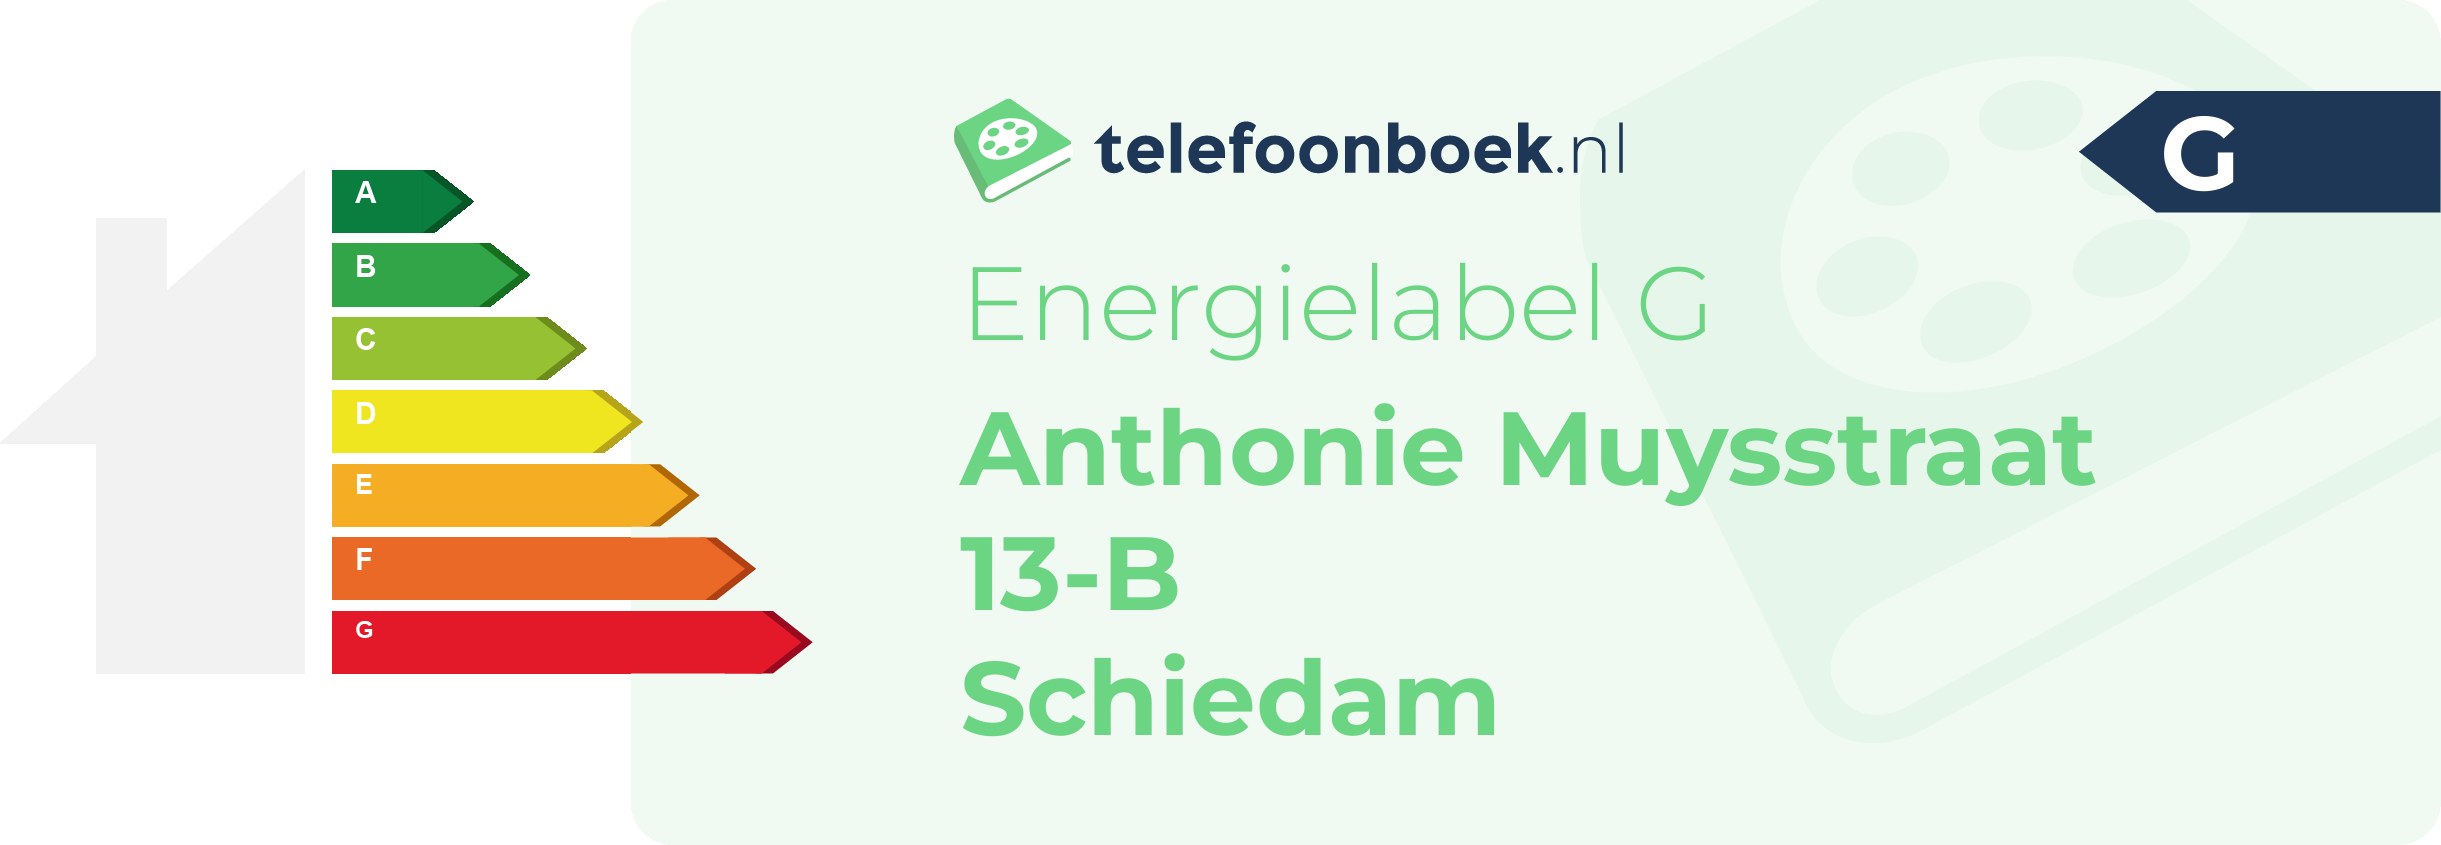 Energielabel Anthonie Muysstraat 13-B Schiedam